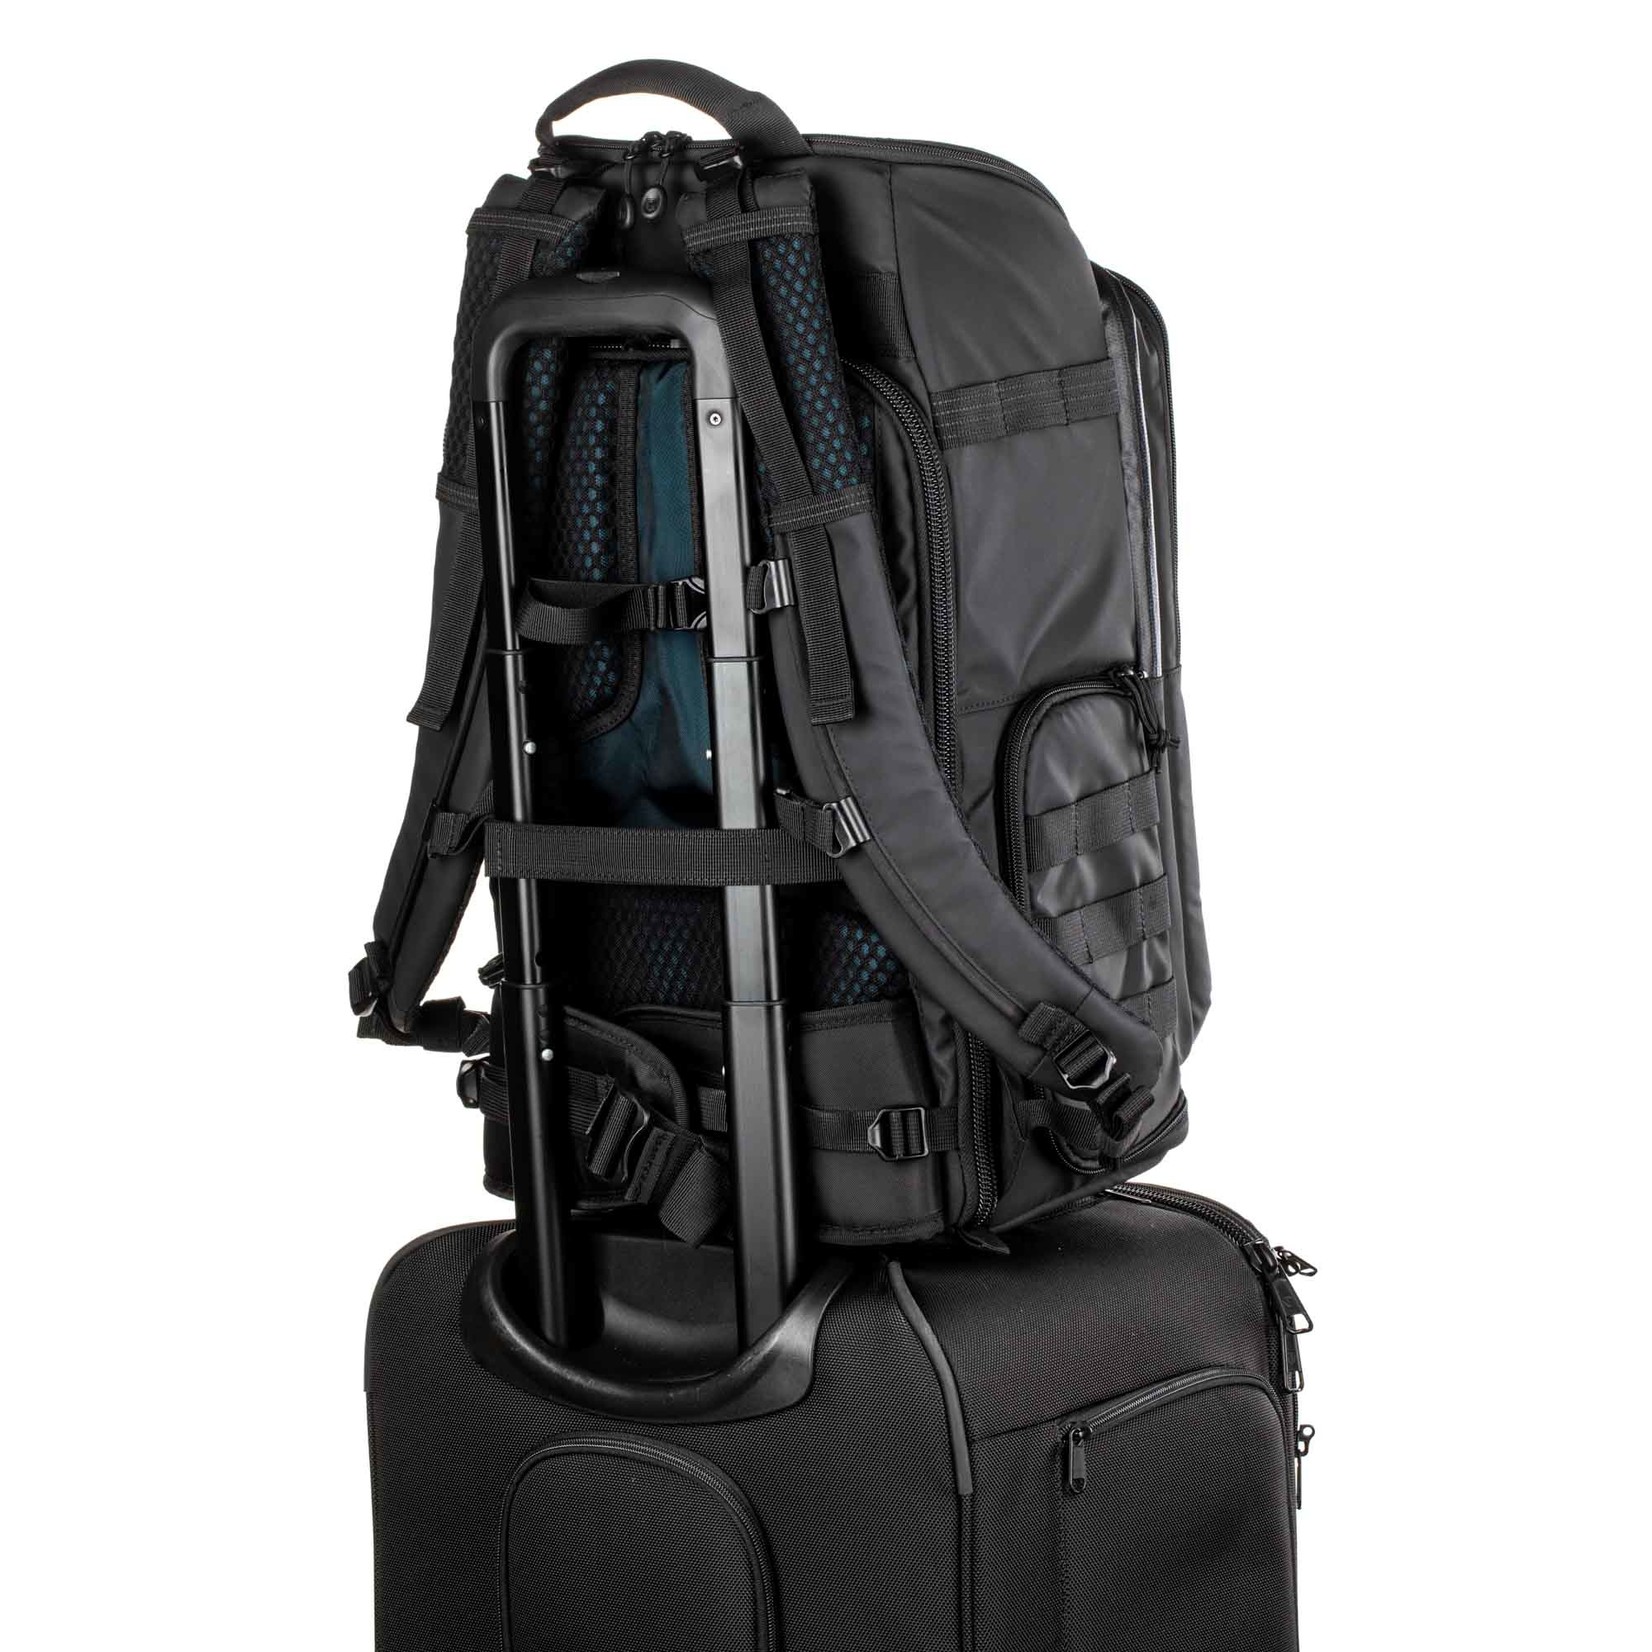 Tenba Tenba Axis v2 24L Backpack – Black